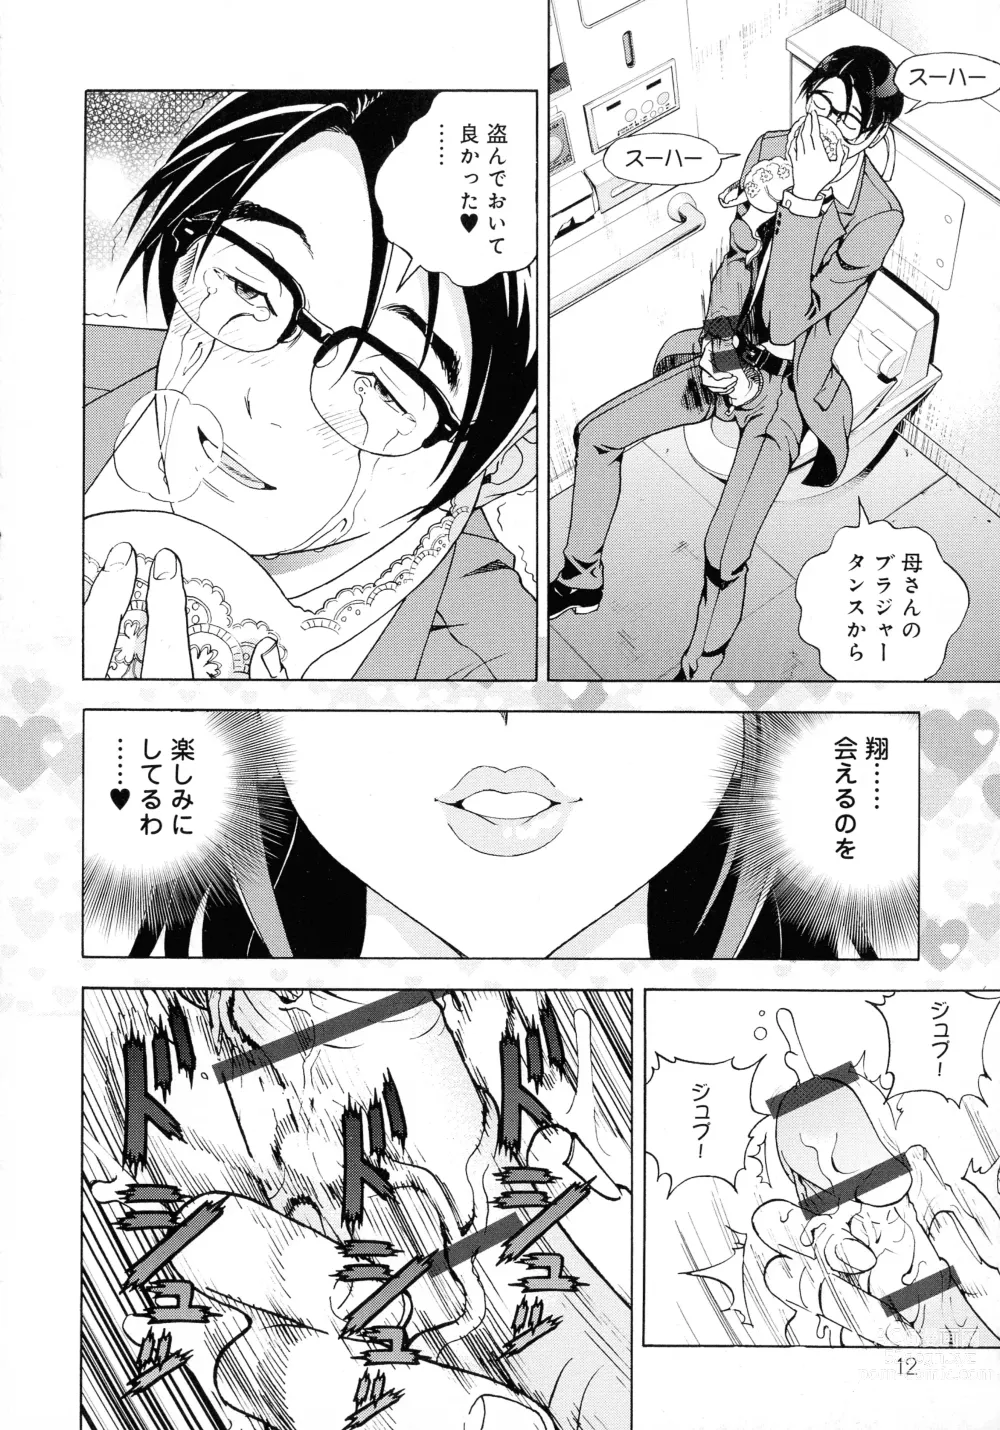 Page 12 of manga Bokinbako 2